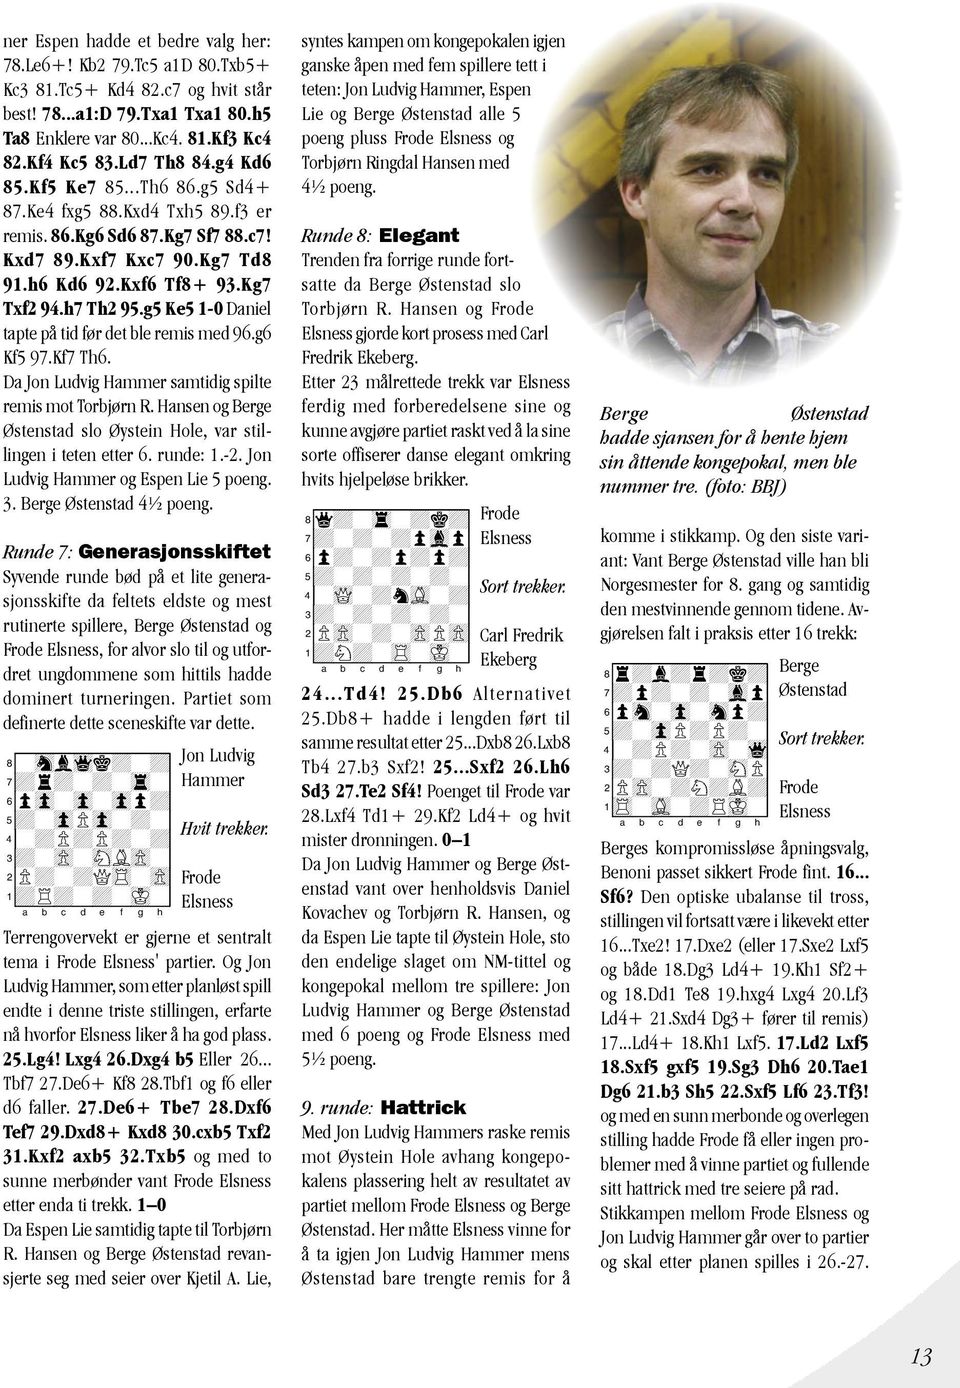 g5 Ke5 1-0 Daniel tapte på tid før det ble remis med 96.g6 Kf5 97.Kf7 Th6. Da Jon Ludvig Hammer samtidig spilte remis mot Torbjørn R.